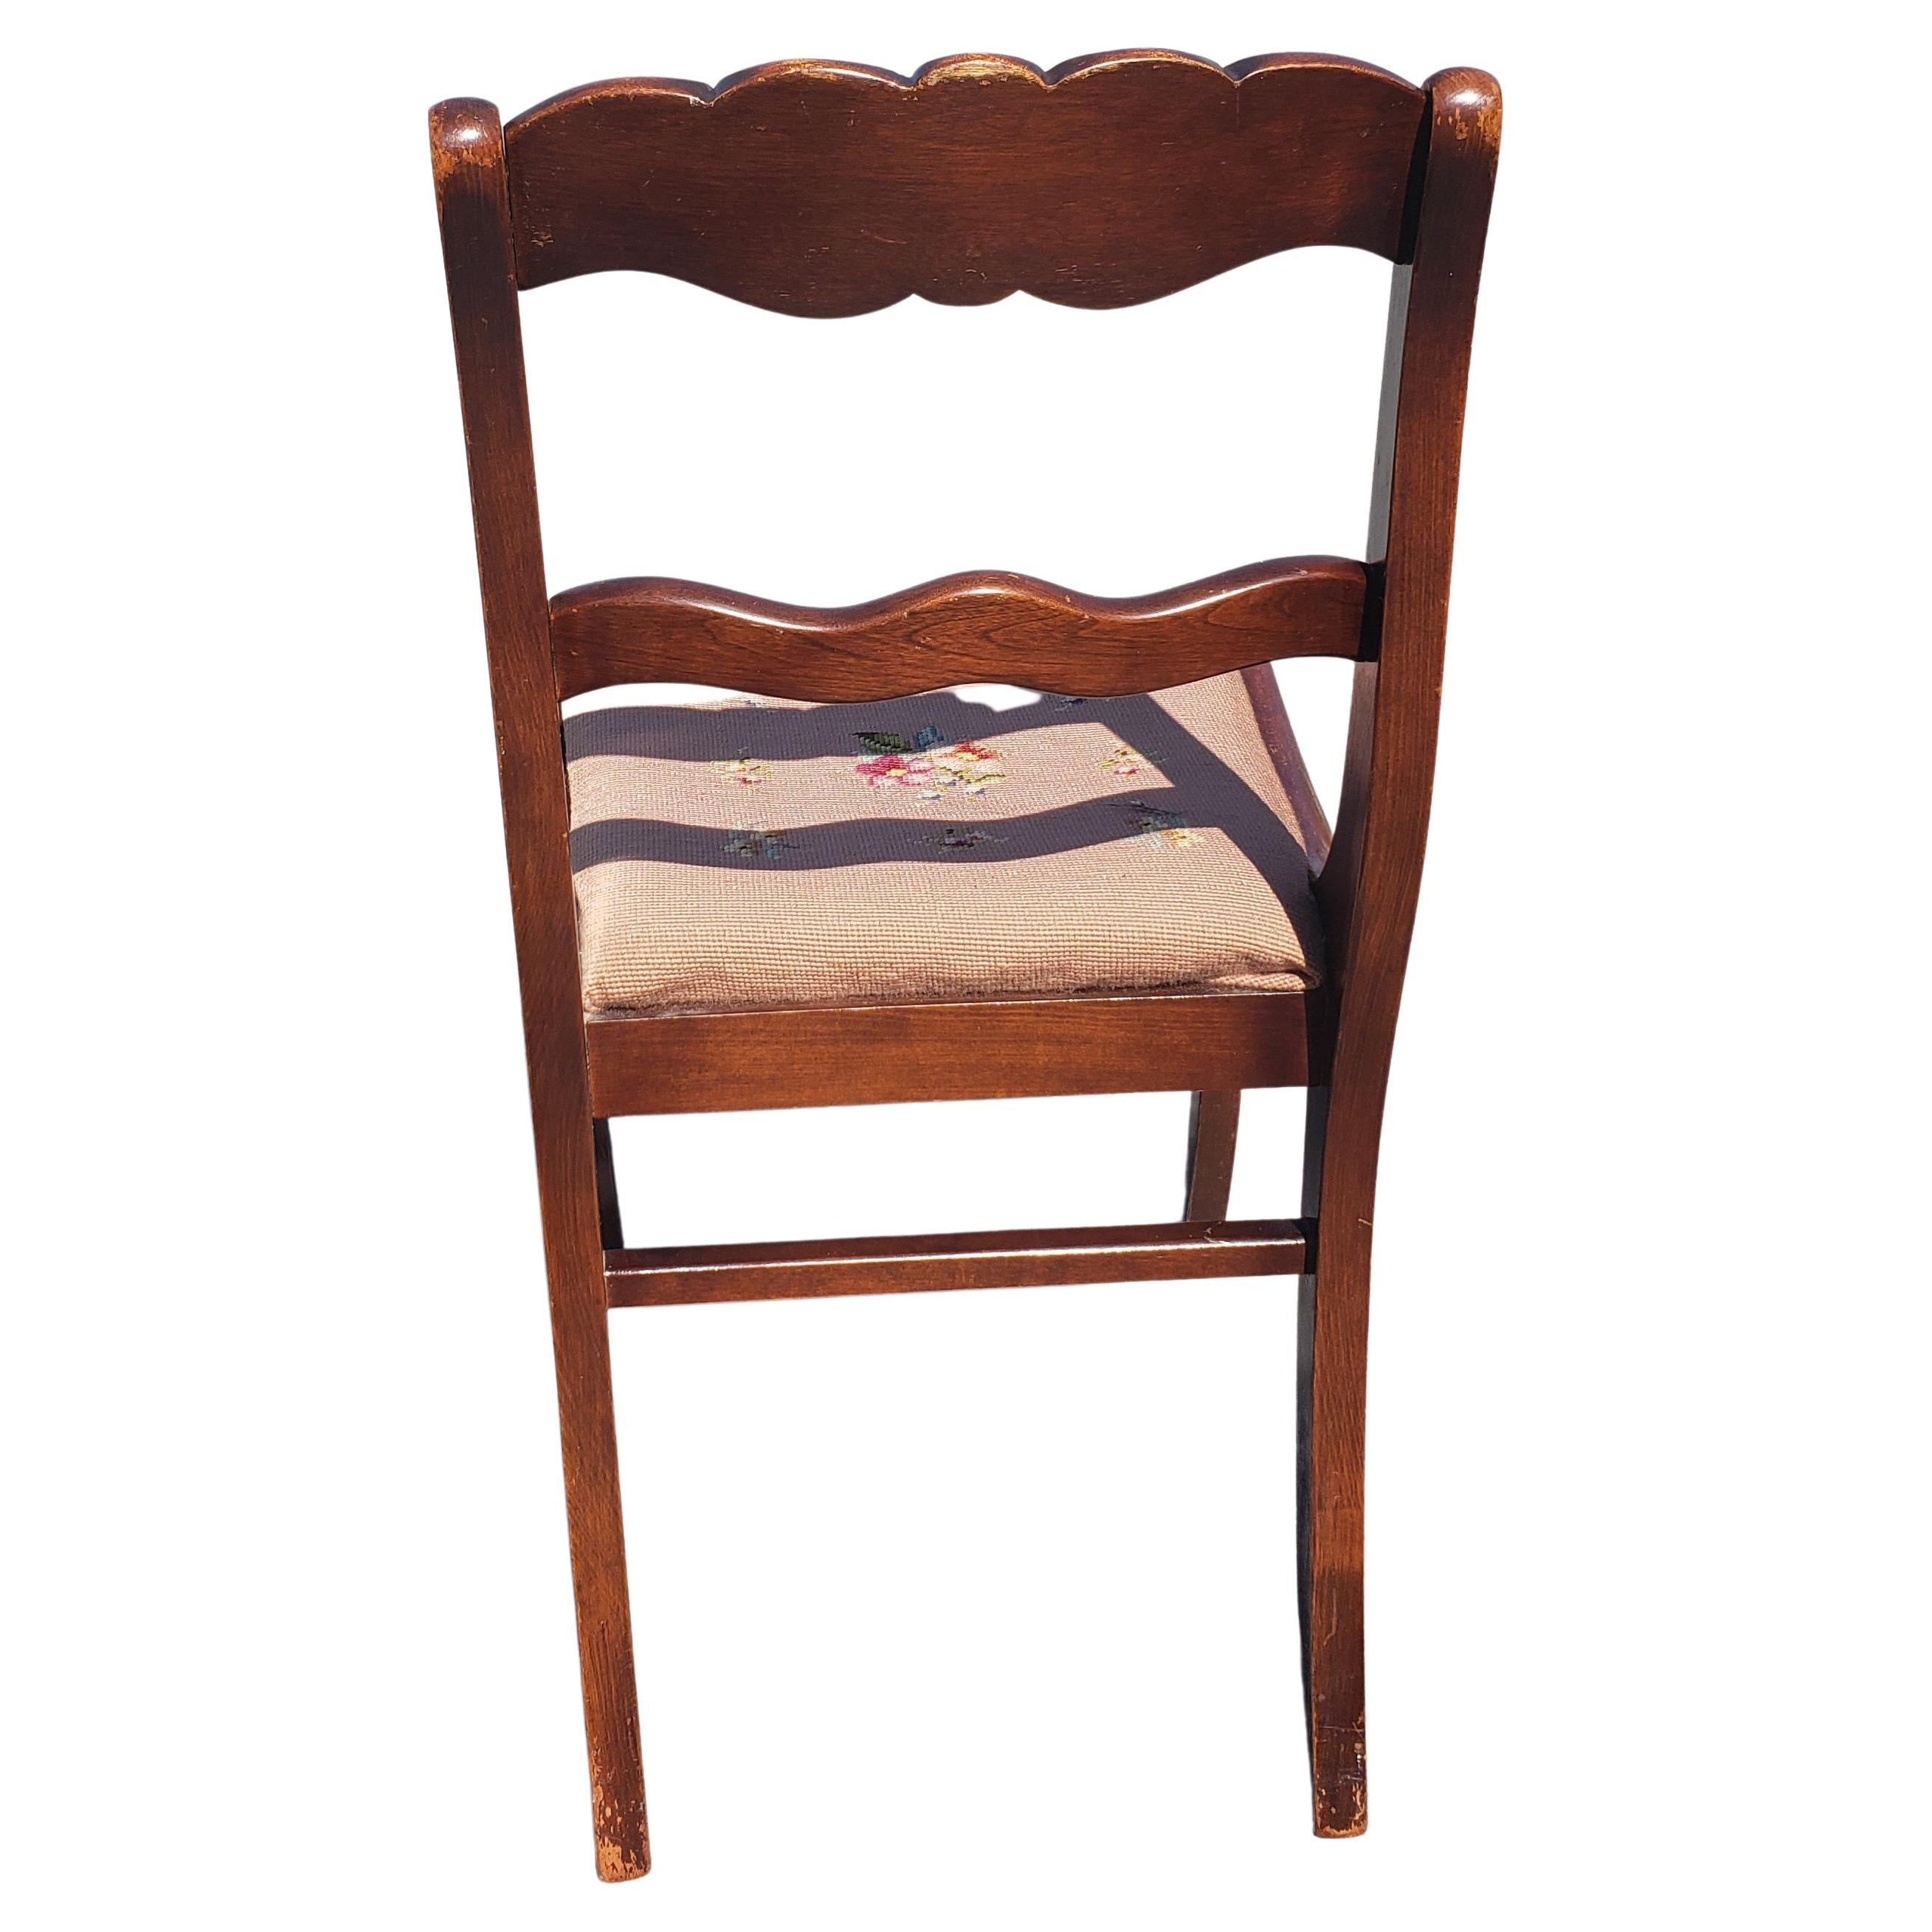 Ensemble de quatre chaises Tell City Chair Company des années 1940, en acajou, à dossier en rosace de Duncan Phyfe, avec assise en point de croix 
Mesure 17,5 pouces de largeur, 20 pouces de profondeur et une hauteur de 33,25 pouces. Hauteur